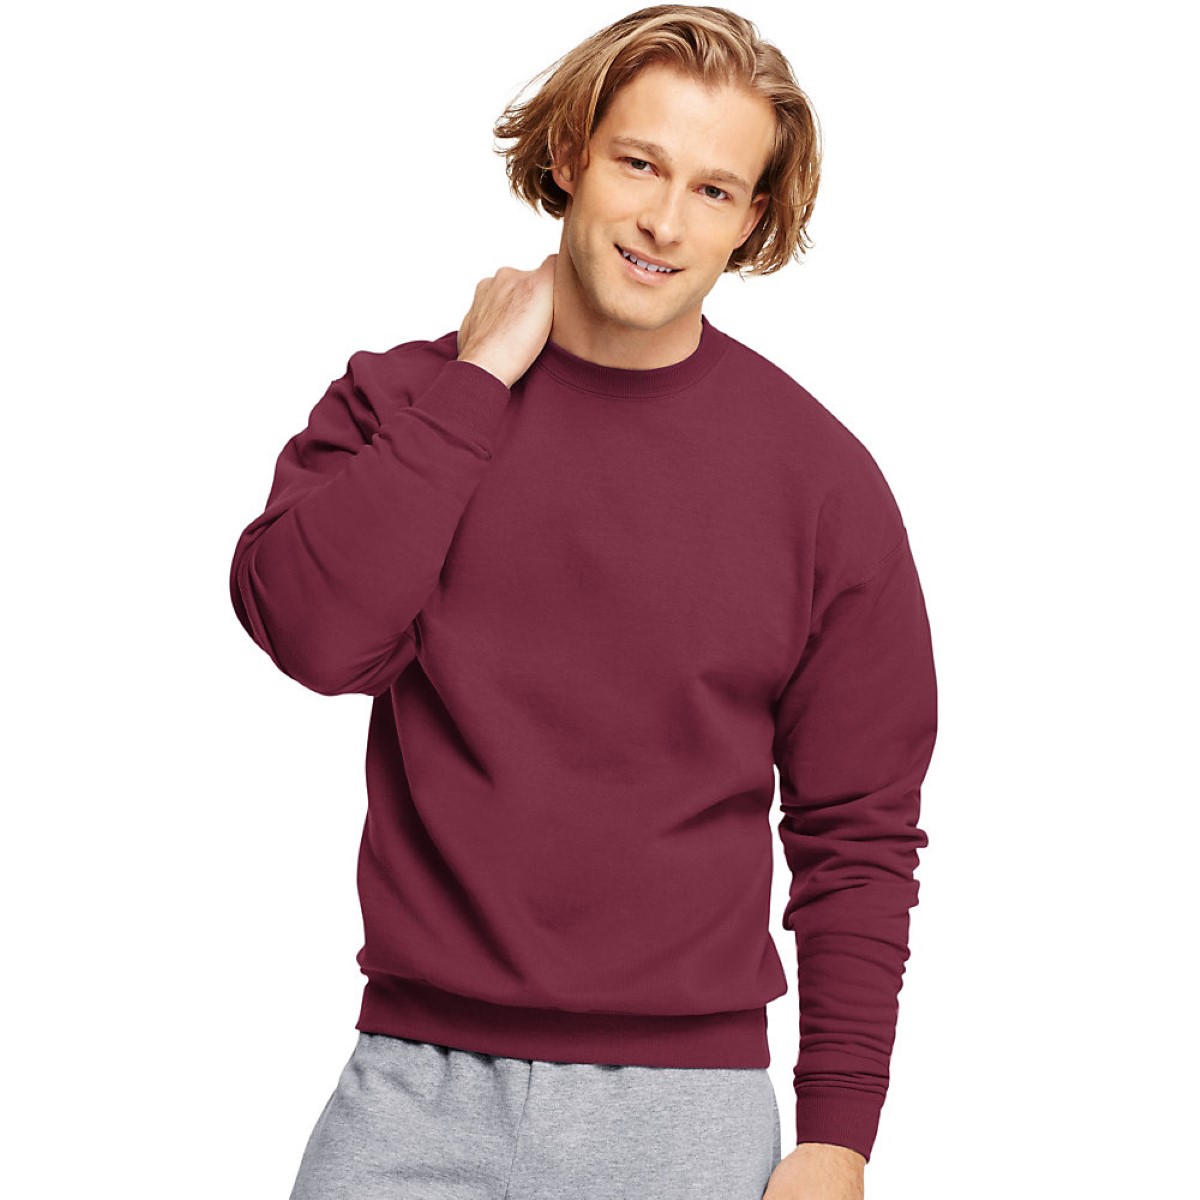 Hanes Men's Comfortblend Ecosmart Crewneck Sweatshirt, P160, S-5XL | eBay